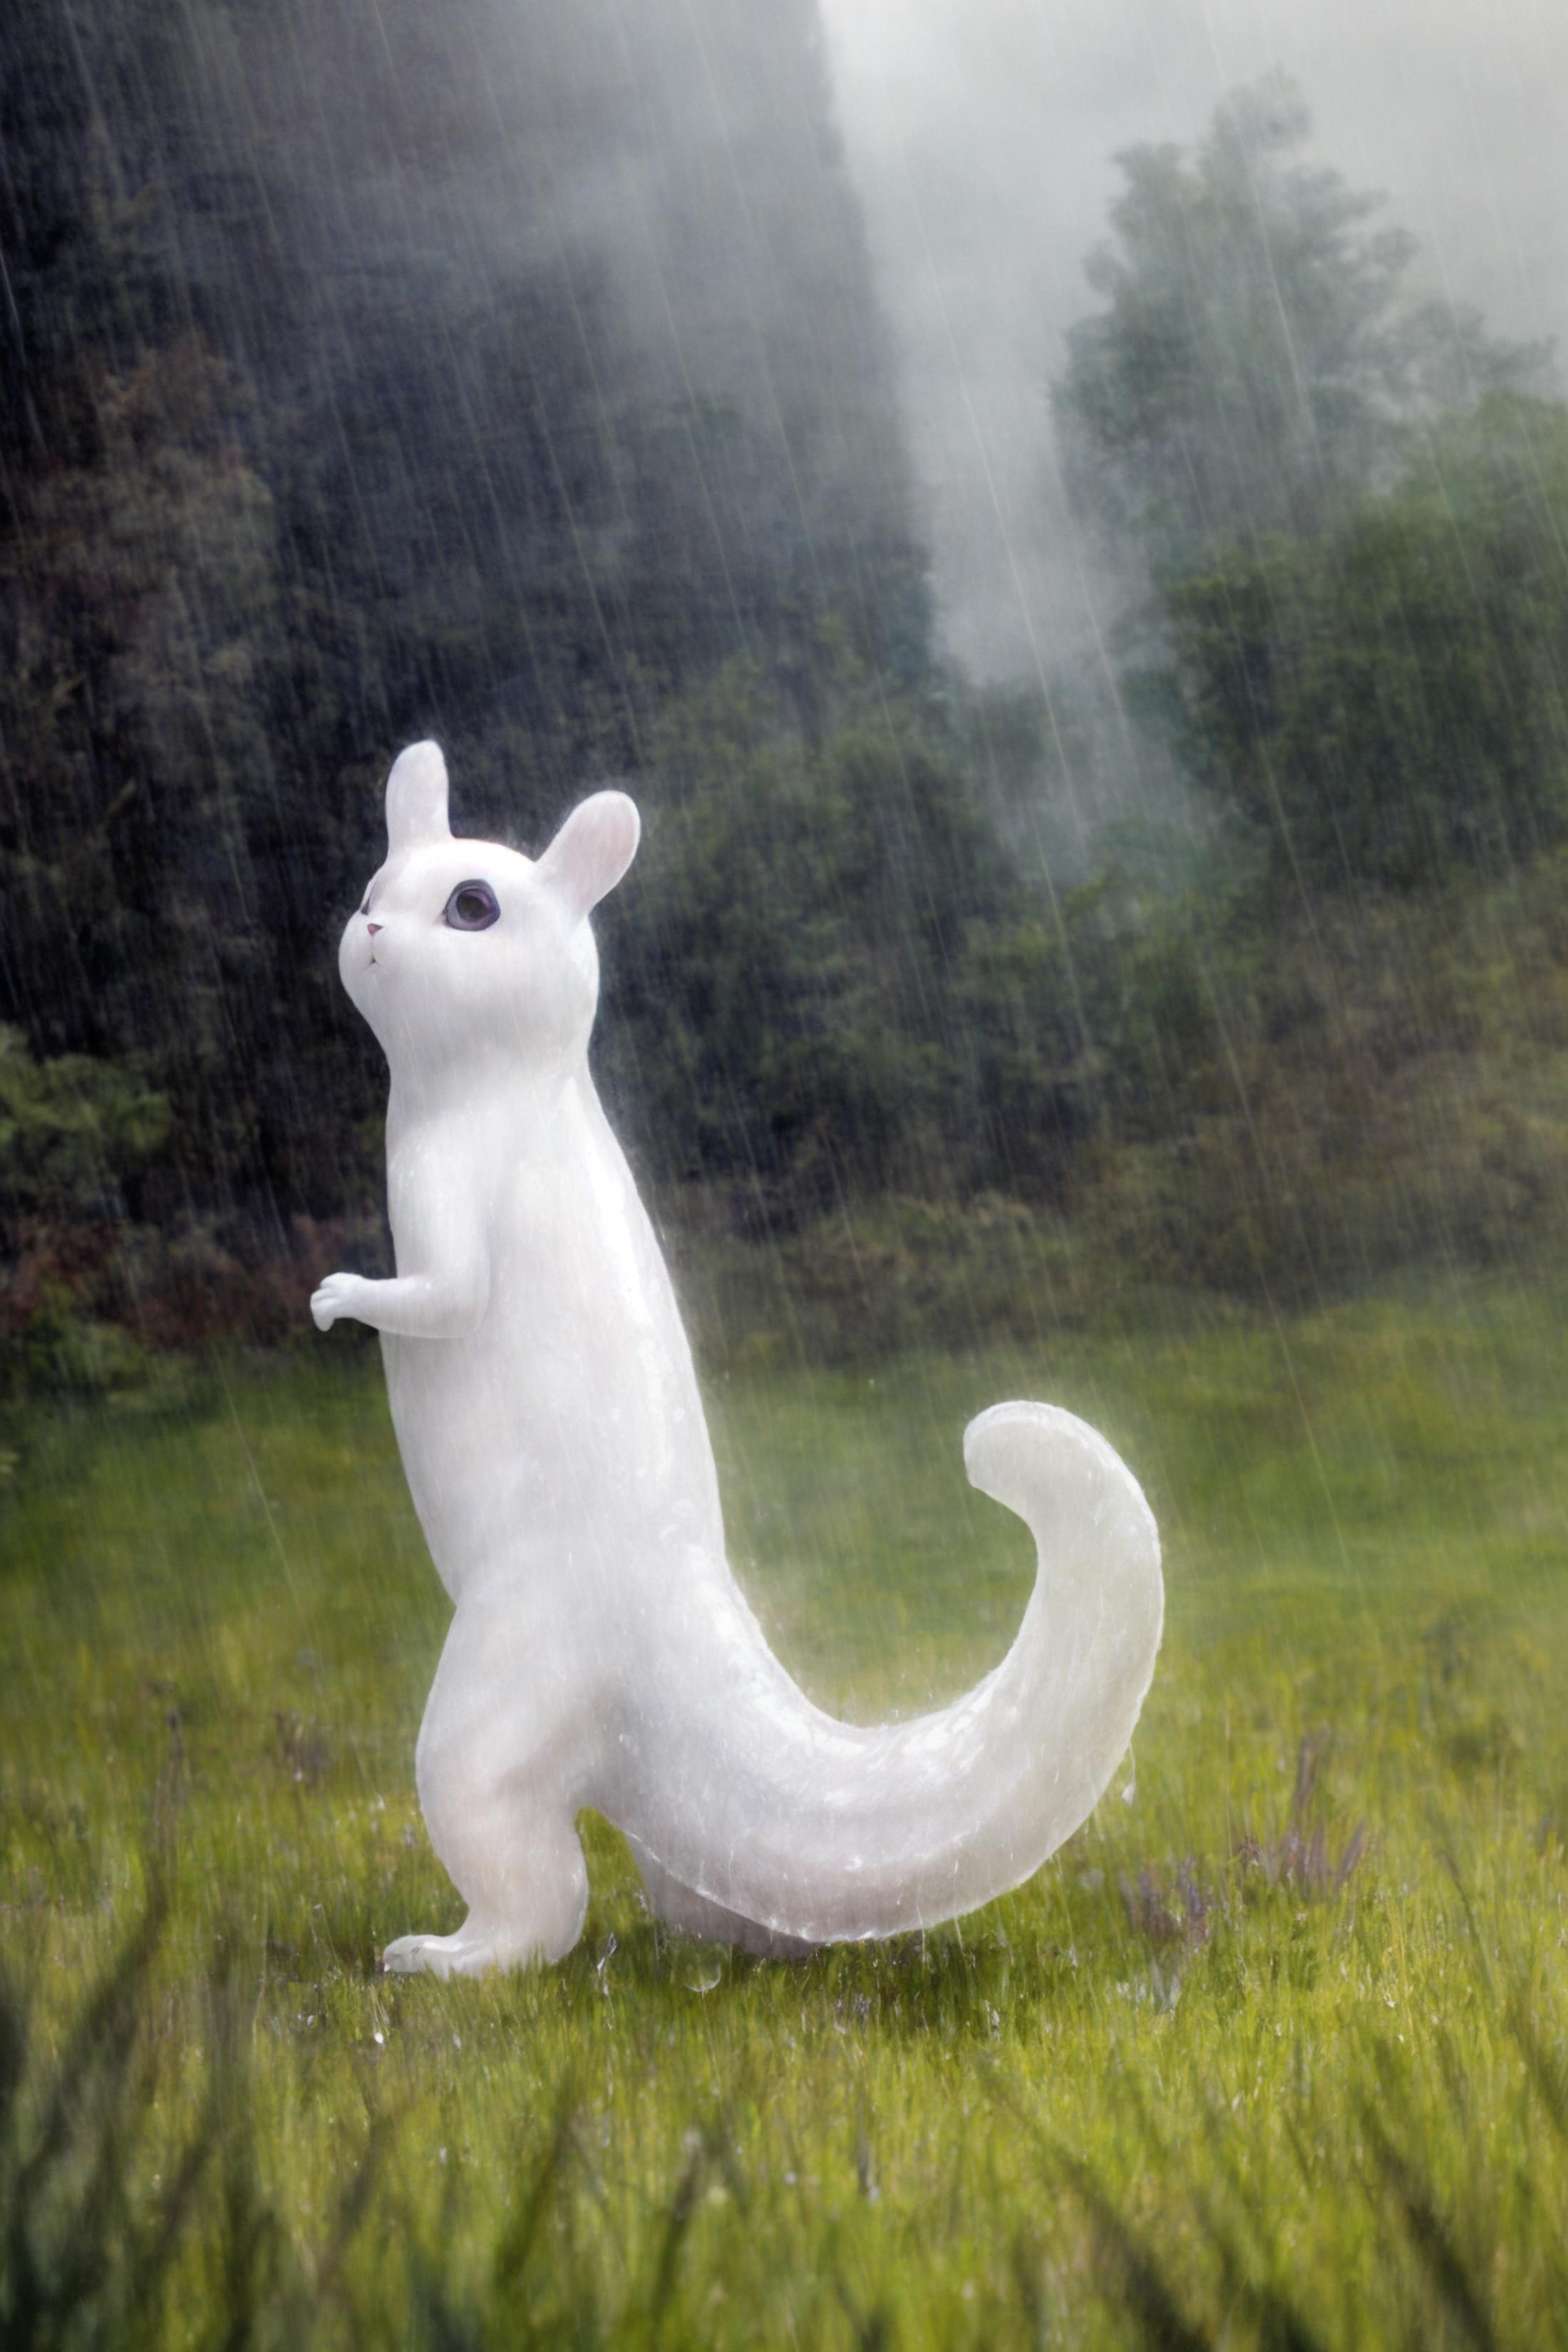 slugcats [Rainworld] (WIP_ image by Gato_de_Fabricacion